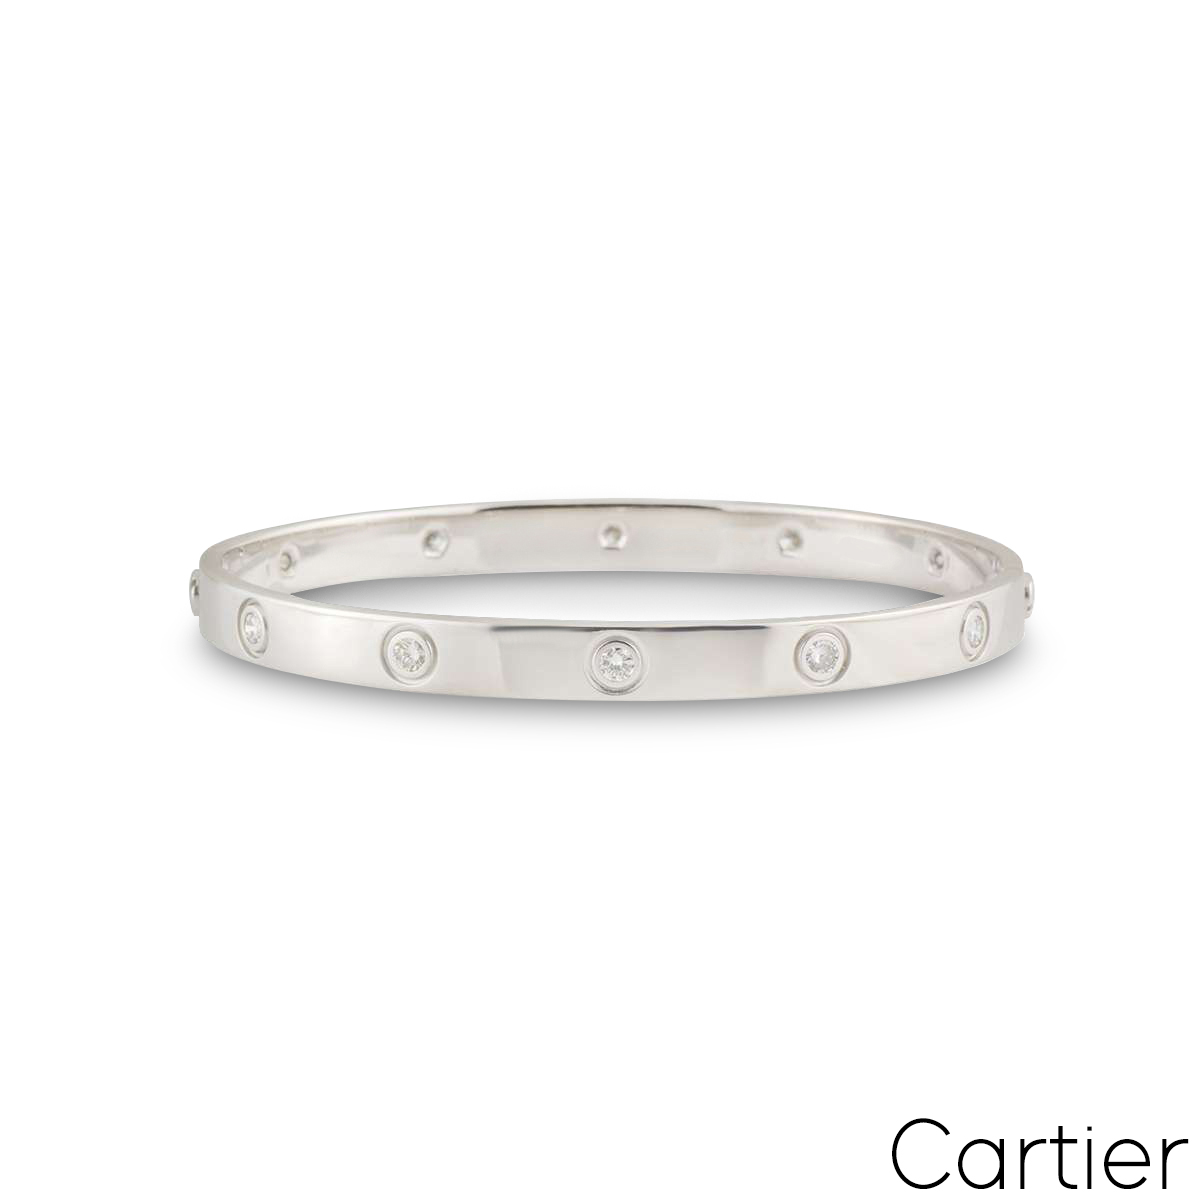 Cartier White Gold Full Diamond Love Bracelet Size 18 B6040718